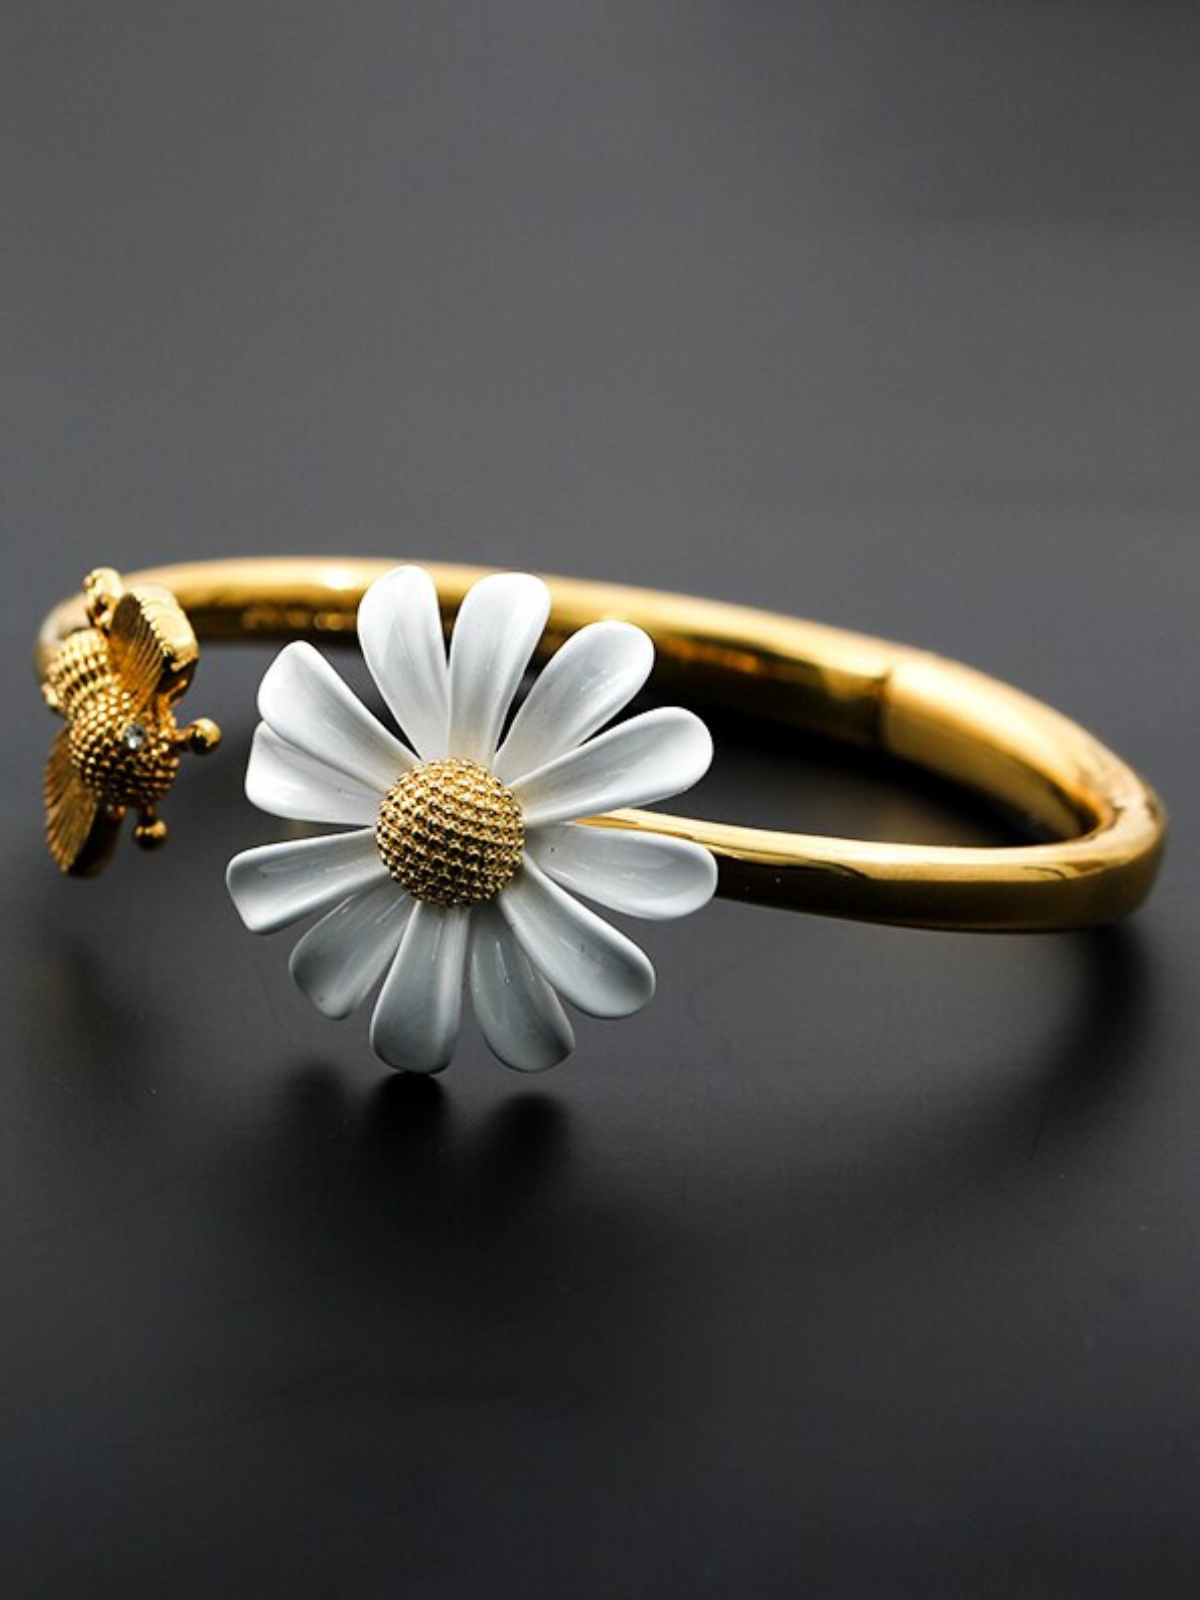 Mia Belle Girls Daisy Flower Bracelet | Girls Accessories